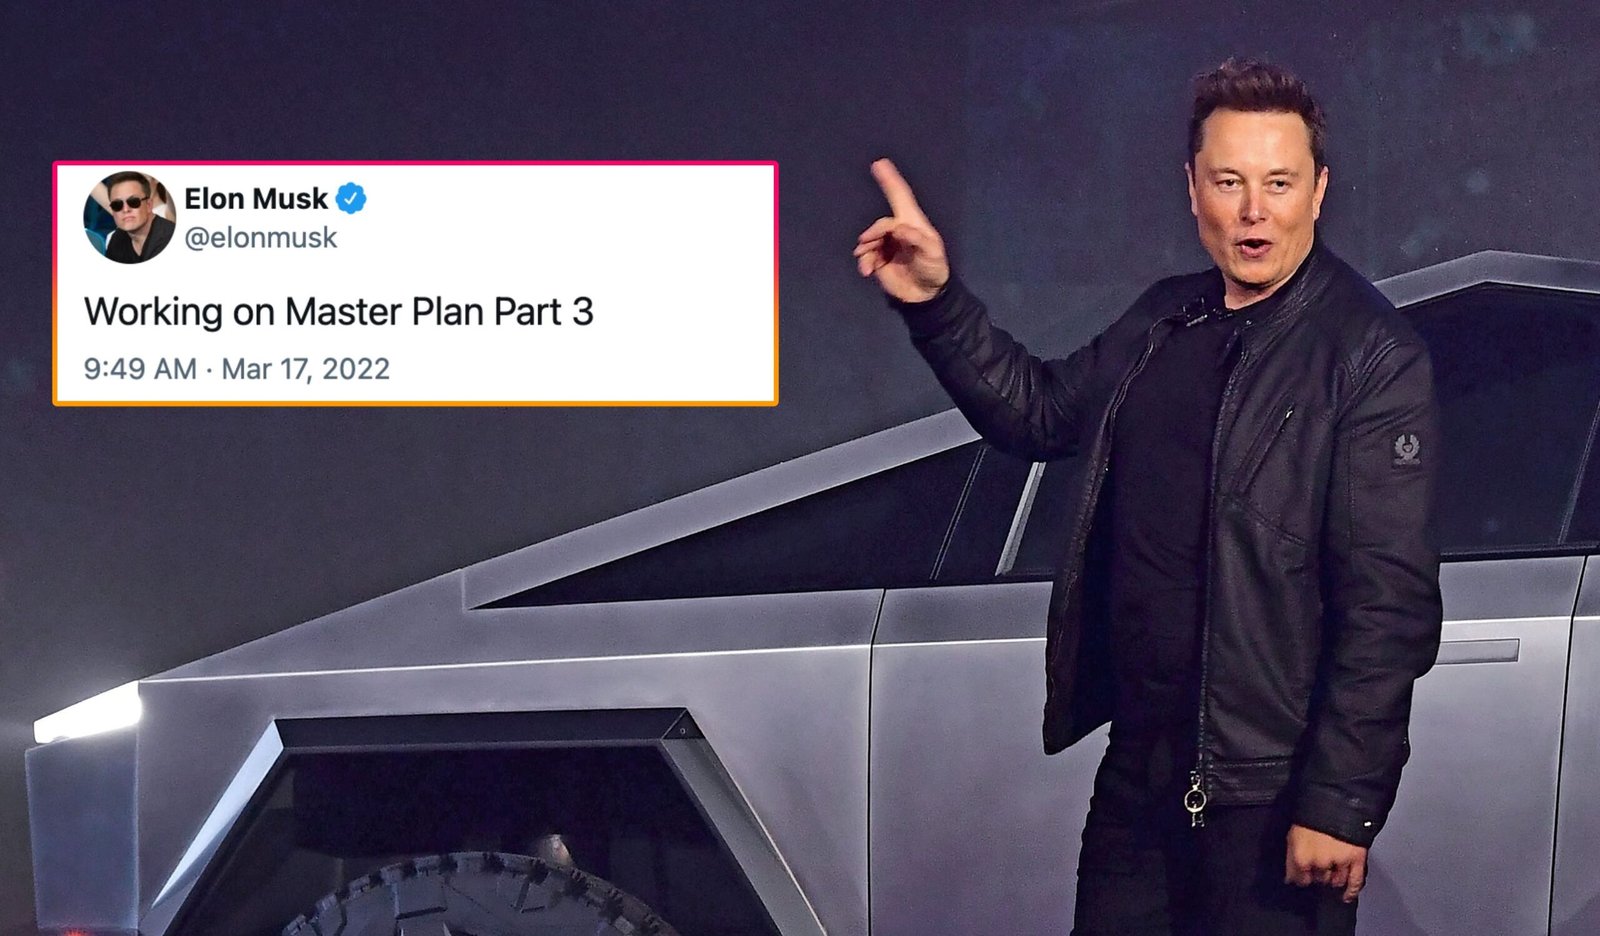 Tesla's Elon Musk Tweets That He's Working On "Master Plan Part 3"